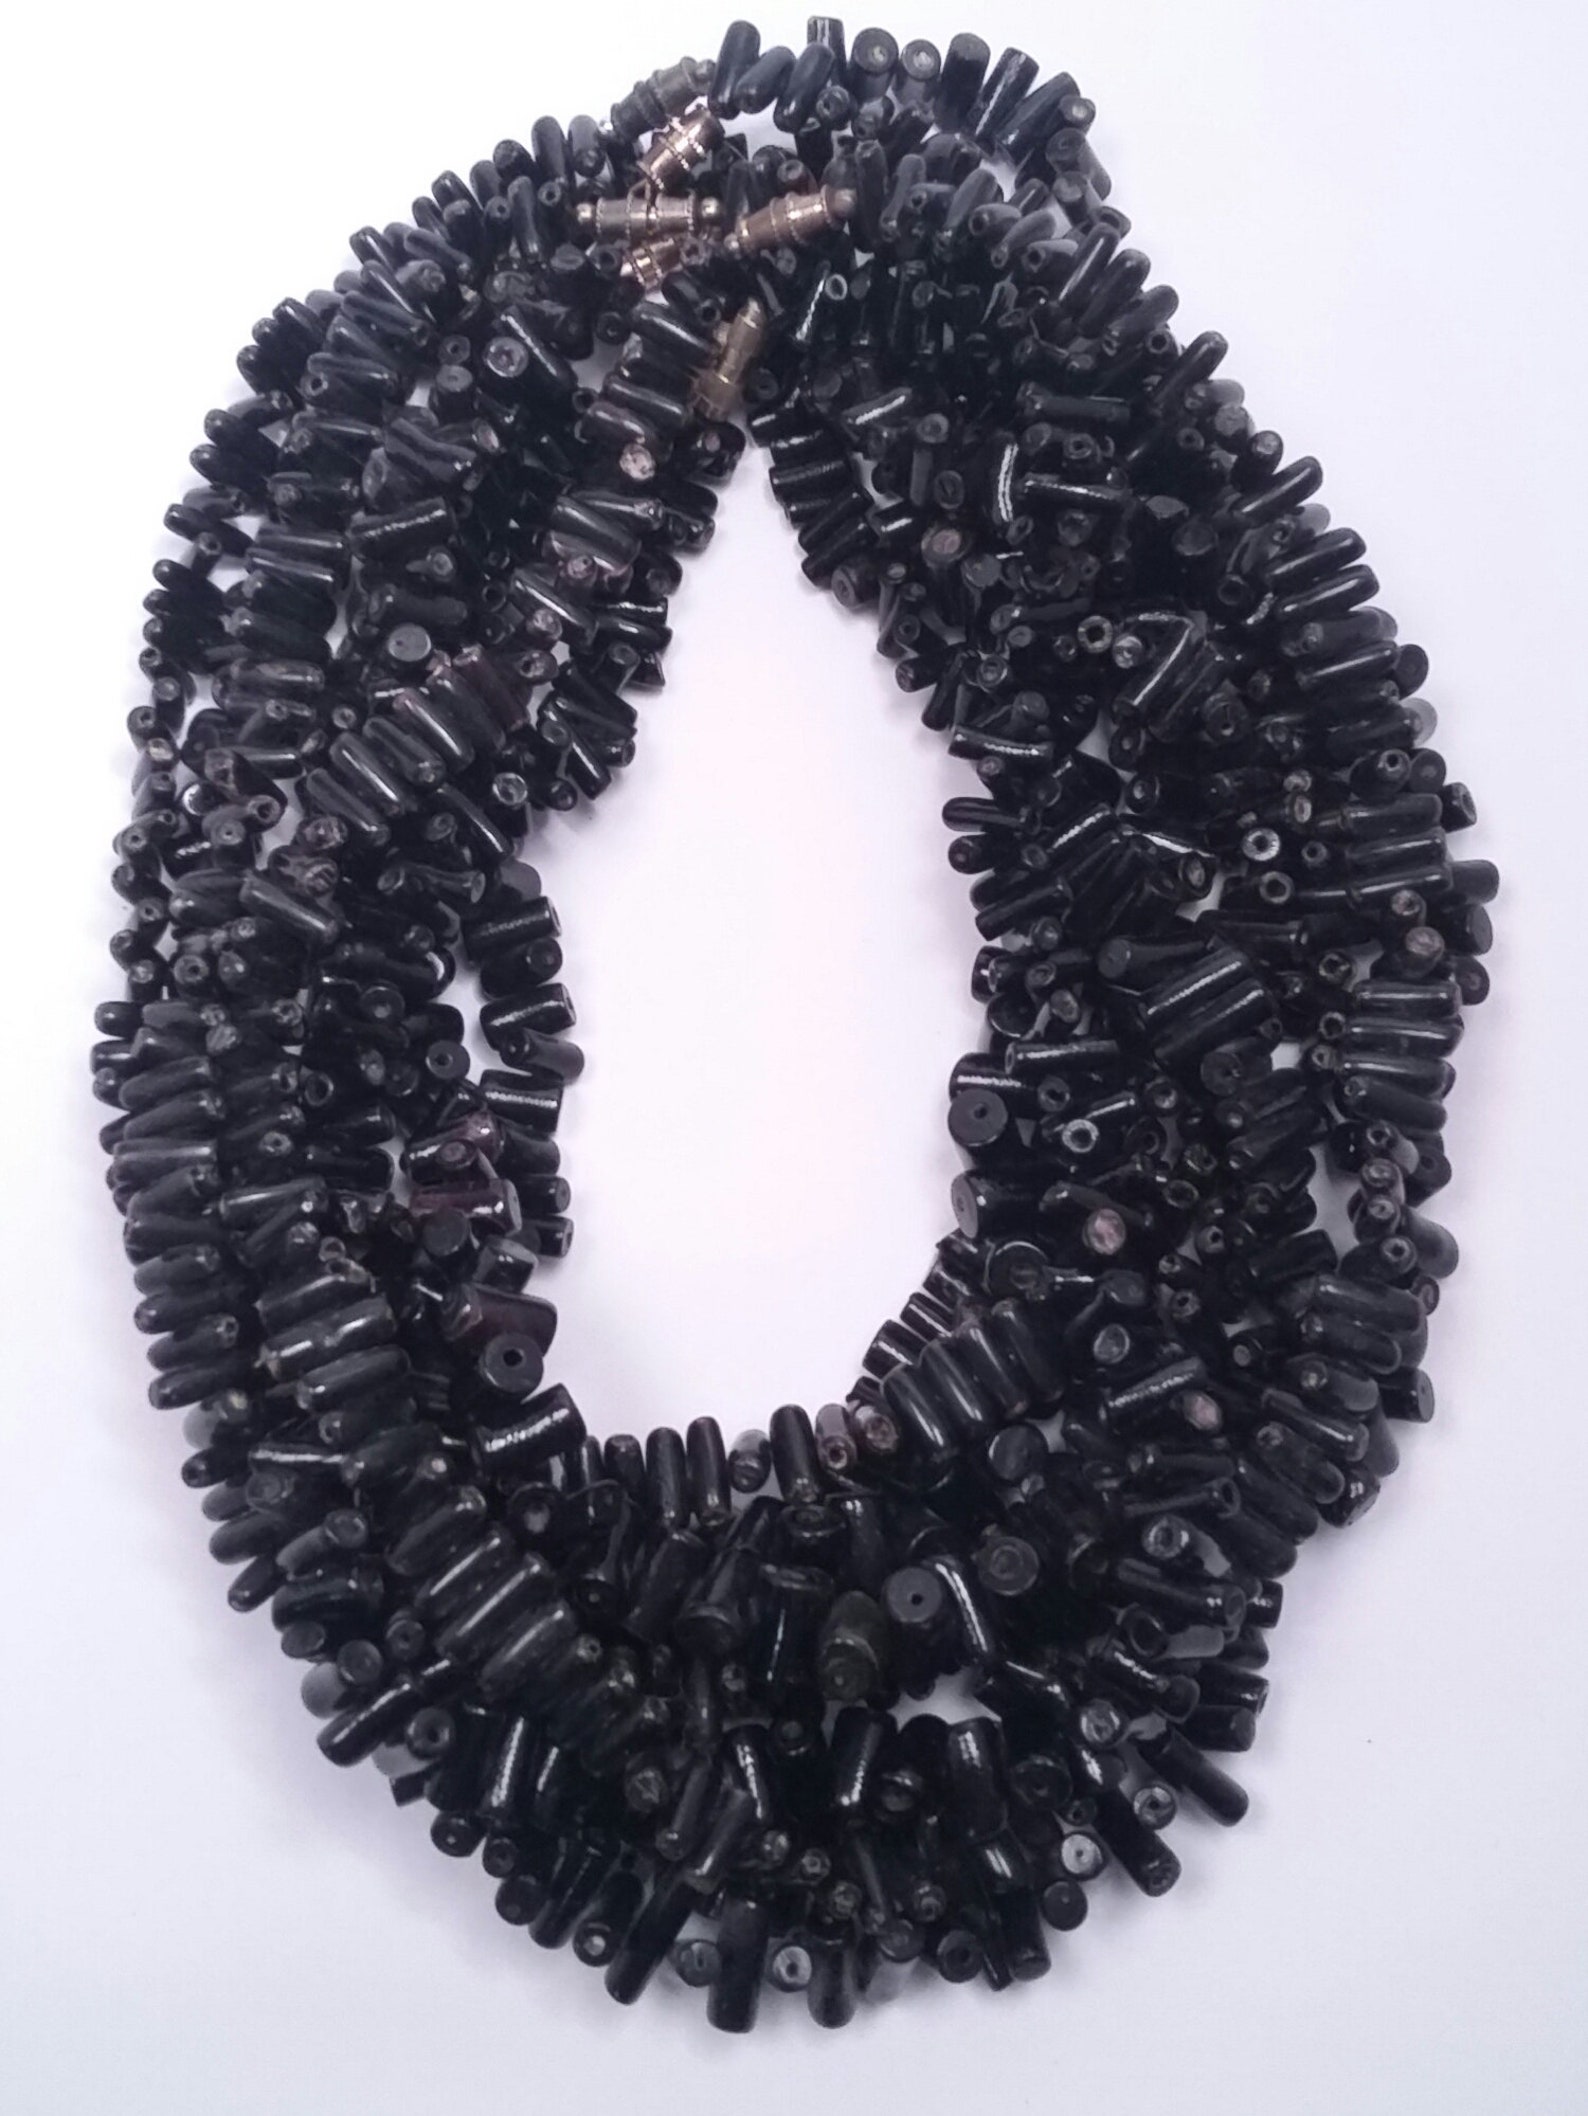 Black Coral Necklace 6 | Etsy